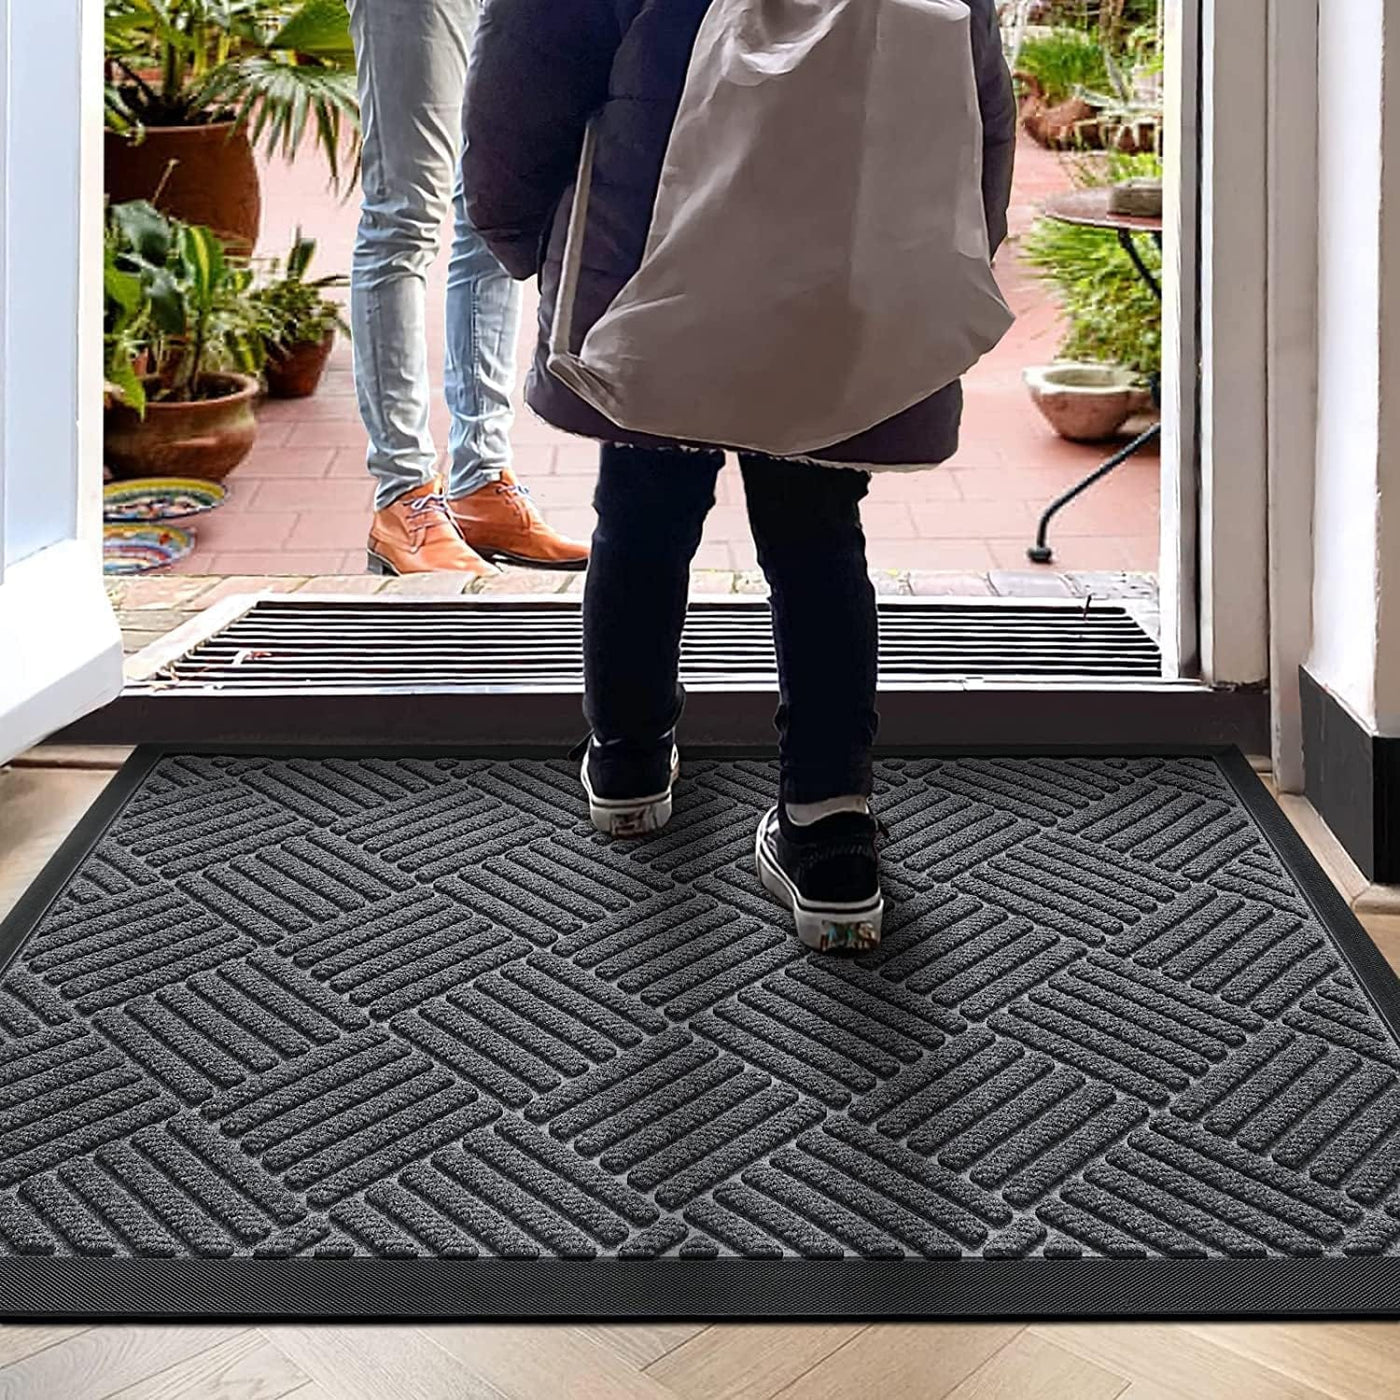 Dubkart Kitchen accessories Home Entry Outdoor Welcome Rubber Door Floor Mat